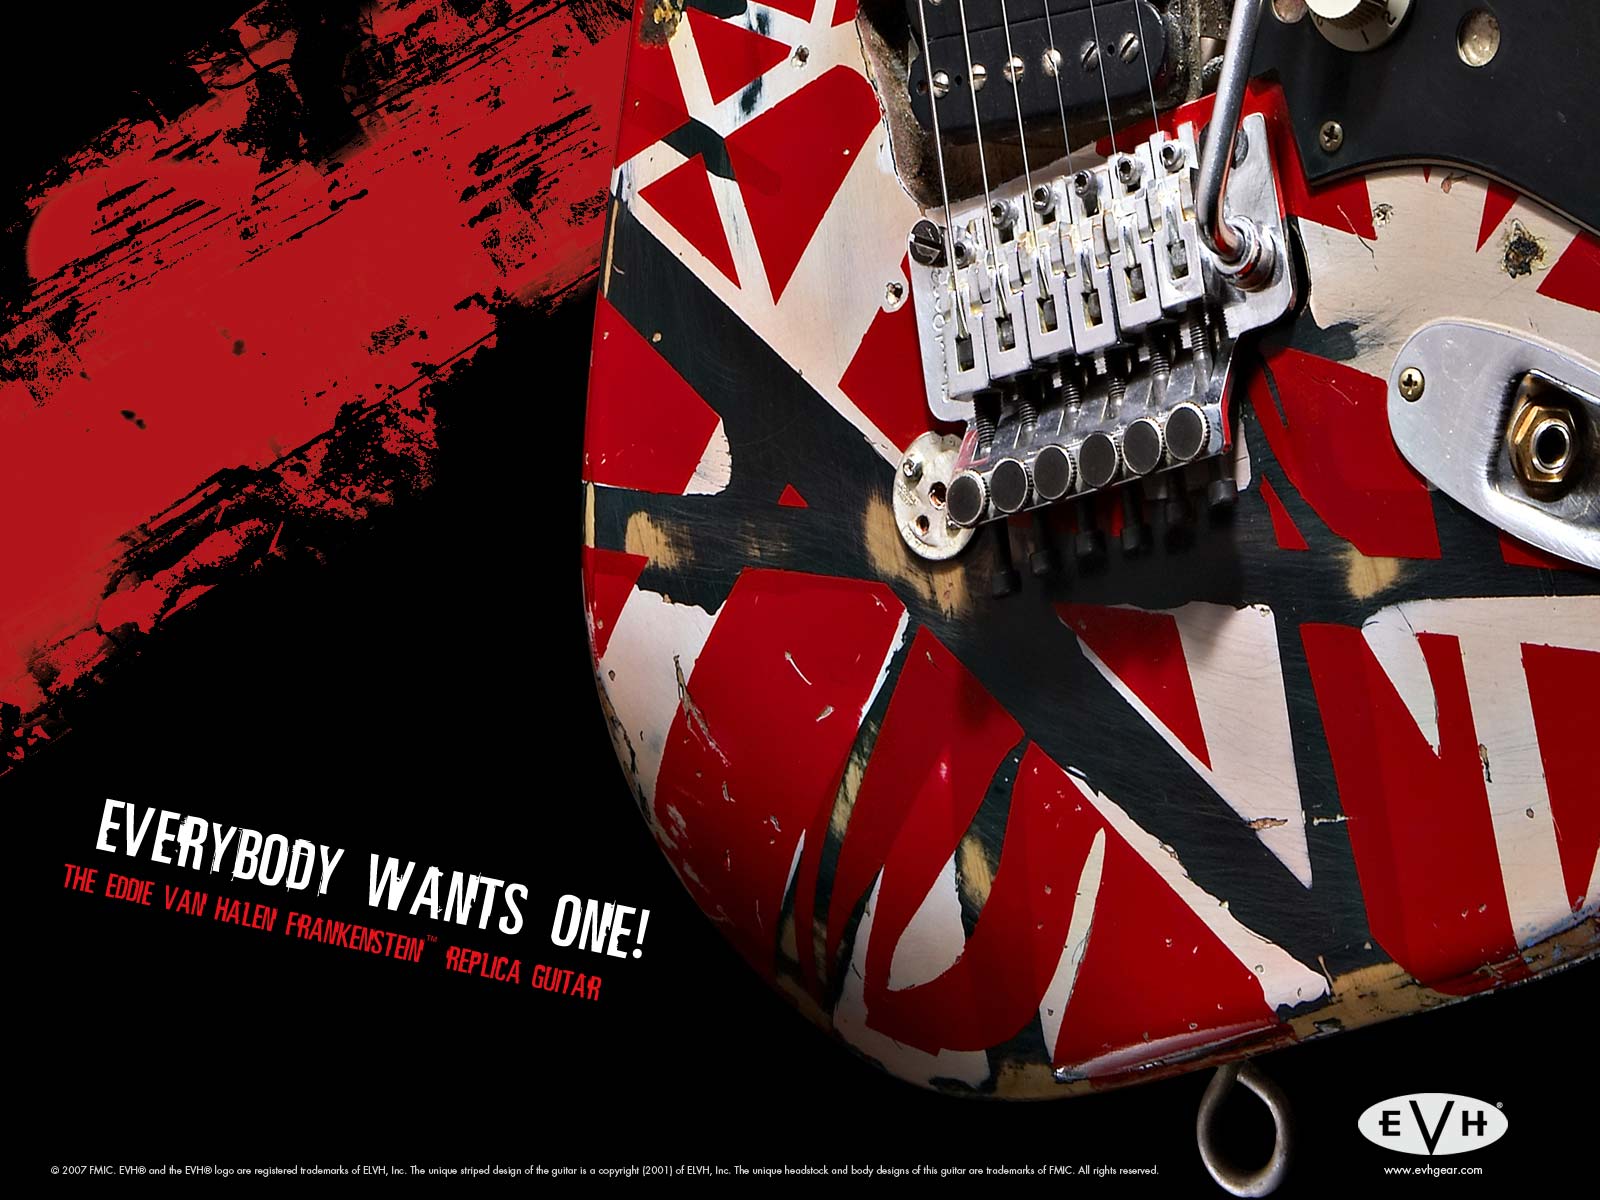 The Eddie Van Halen Frankenstein™ Replica Guitar